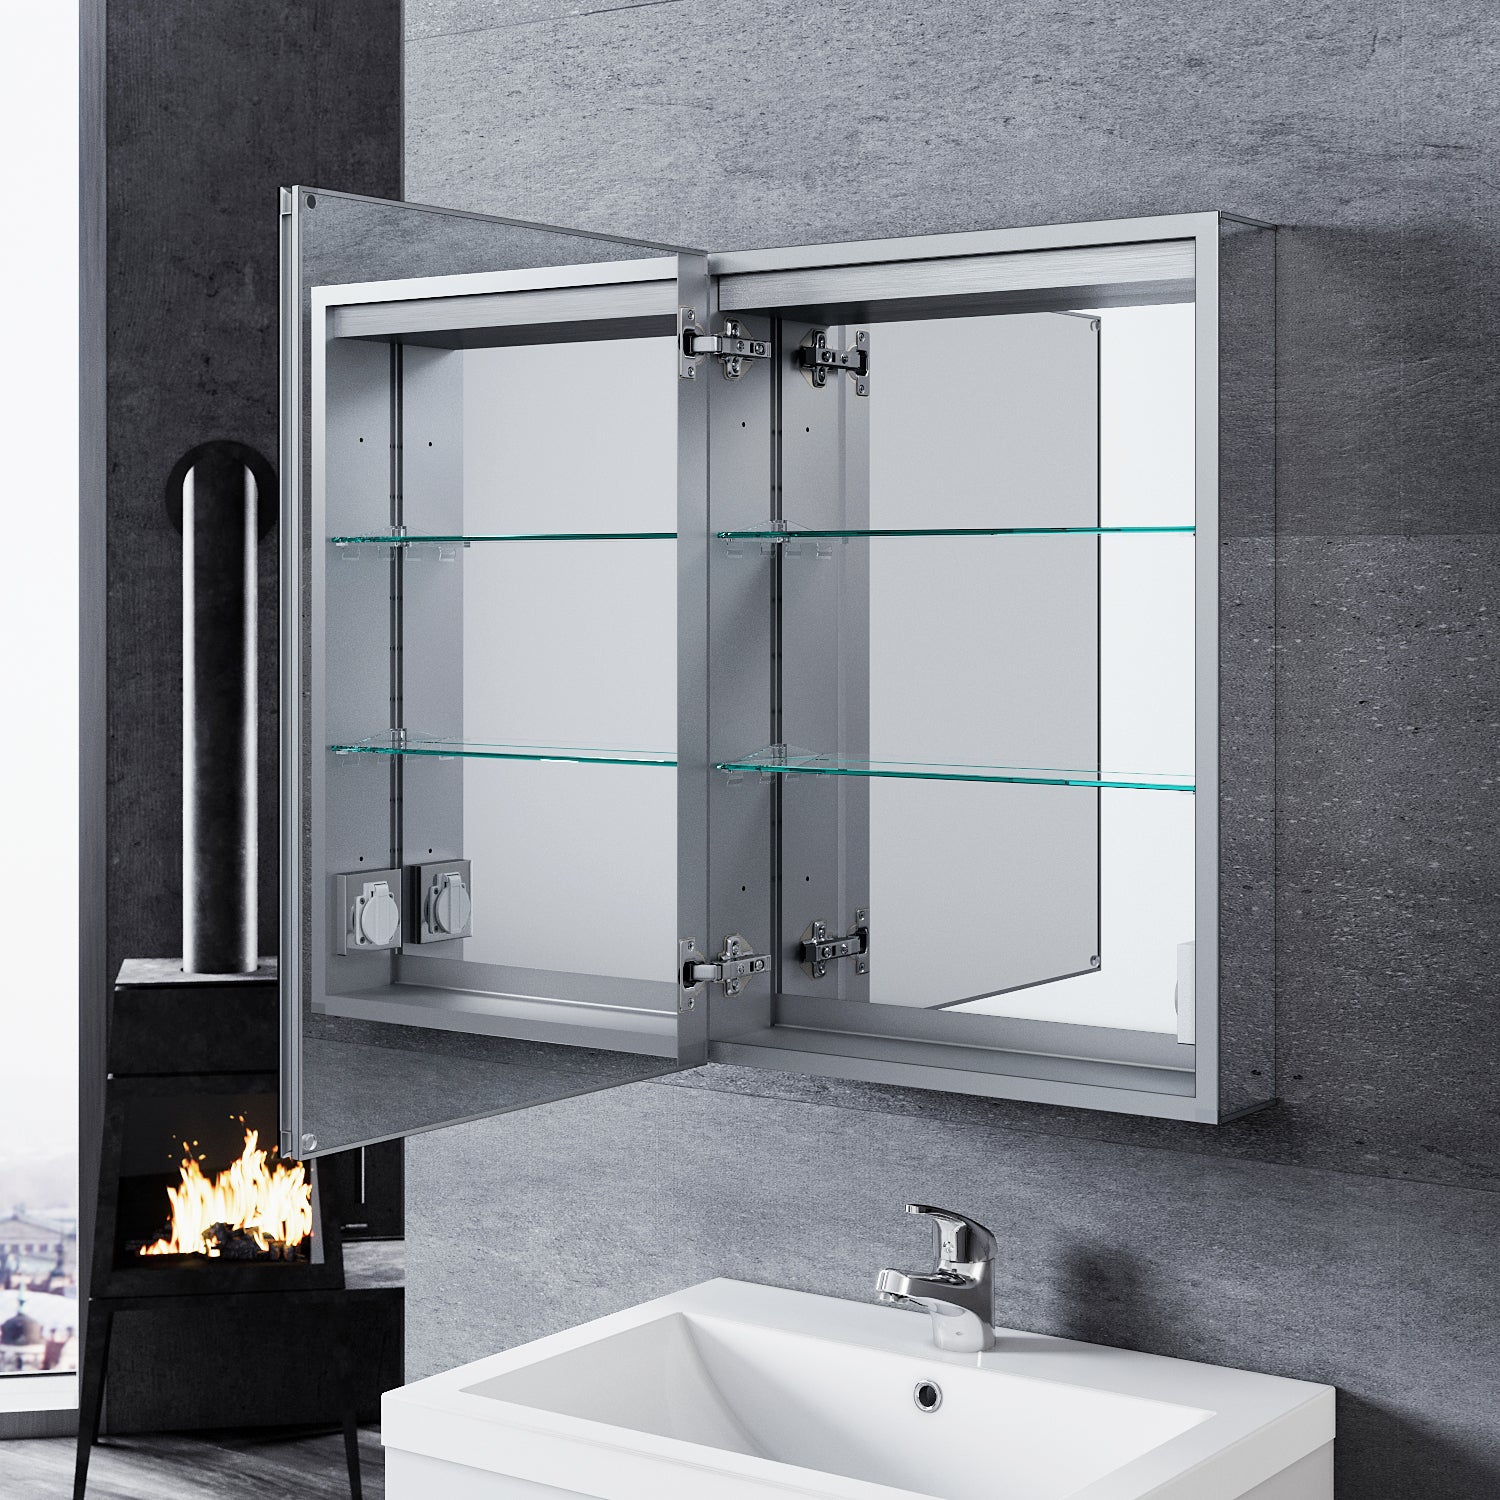 SONNI LED Spiegelschrank mit Beleuchtung für das Badezimmer Aluminium Spiegelschrank mit Beleuchtung Spiegelschrank mit Steckdose wasserdicht beschlagfrei